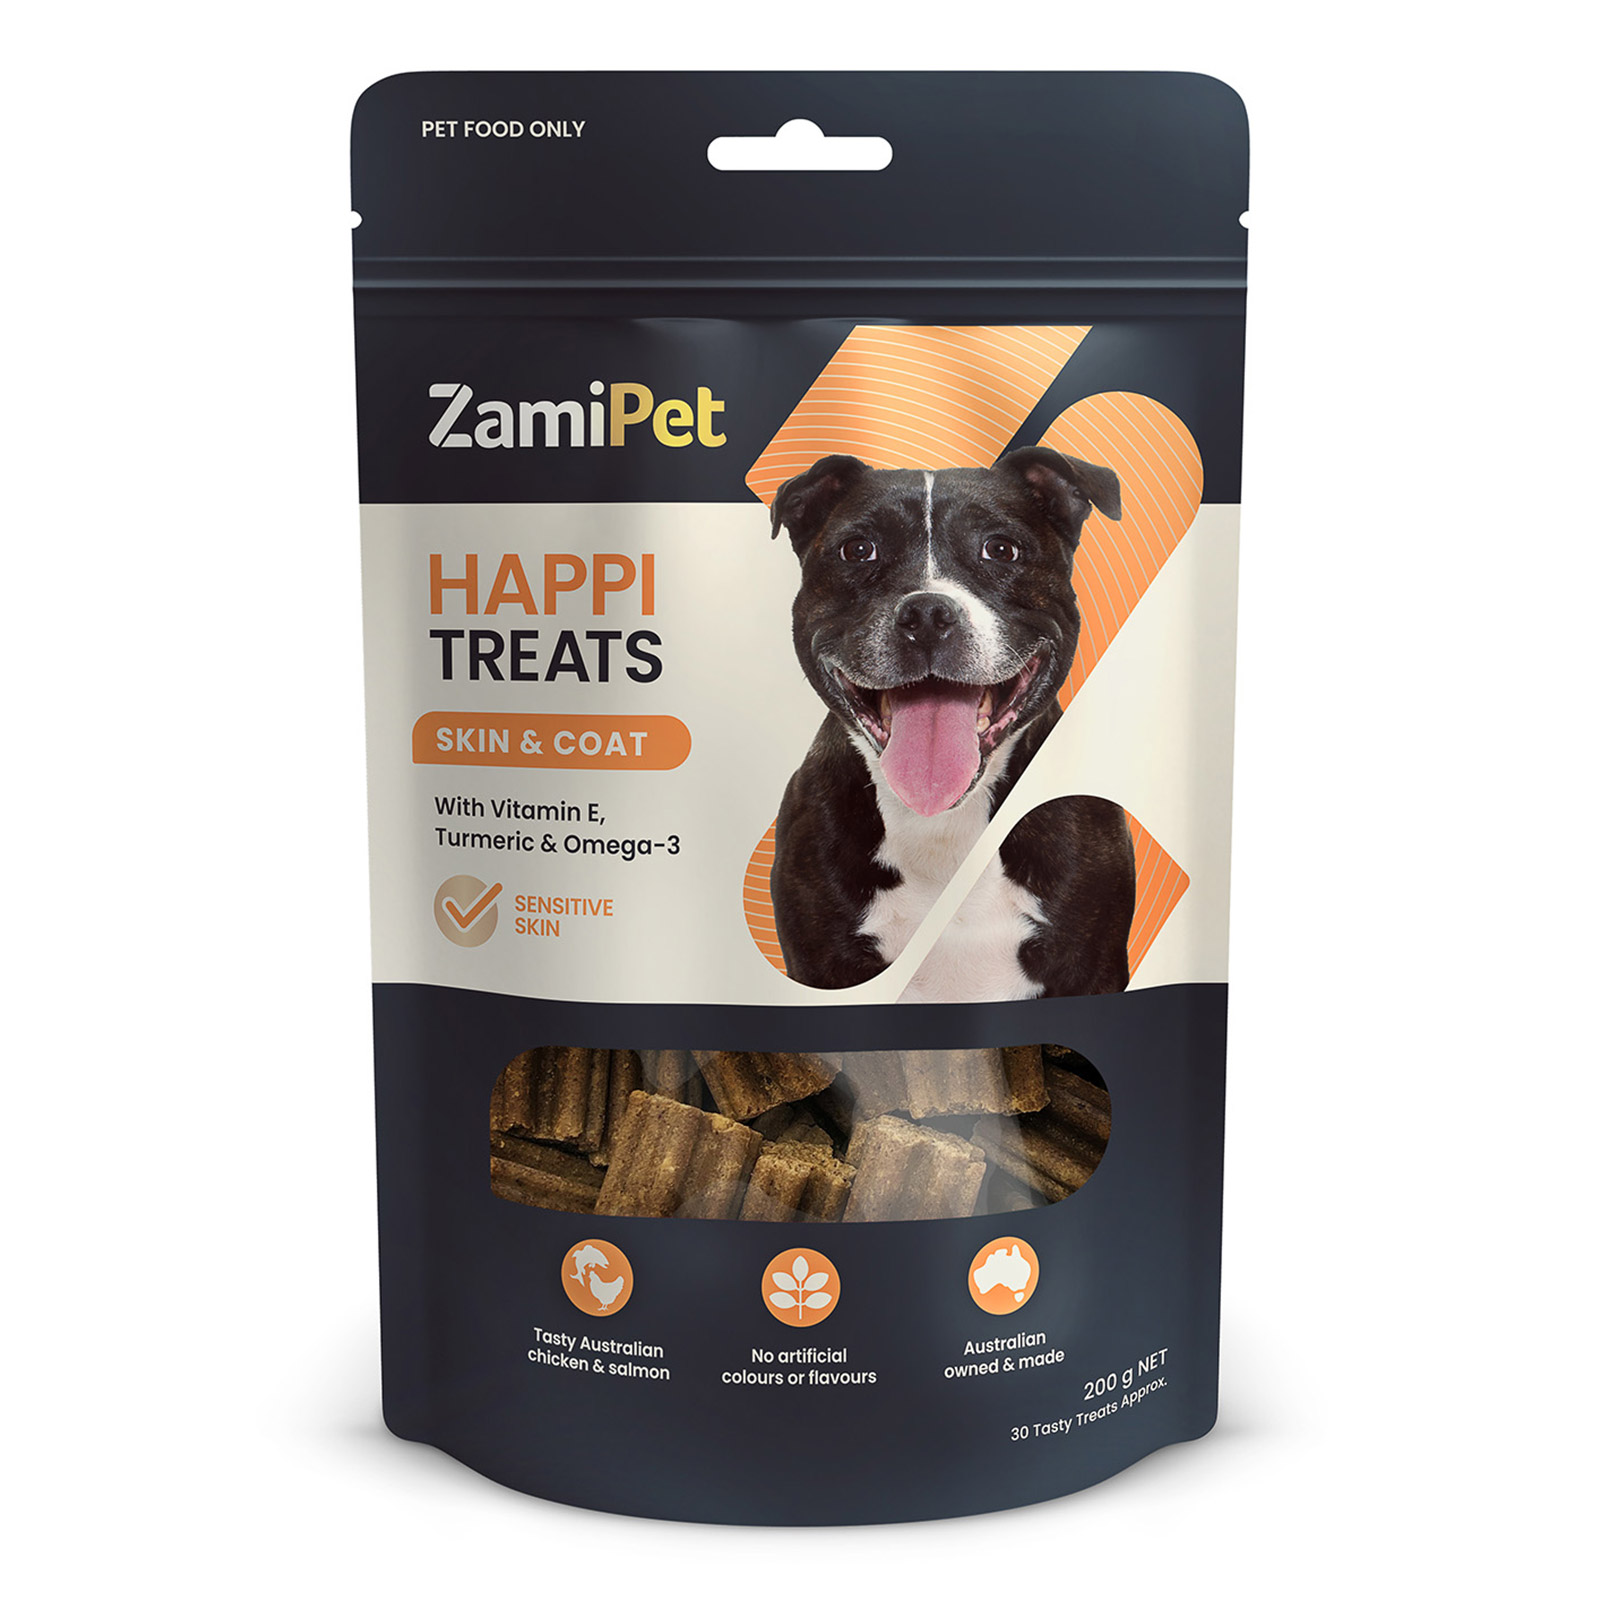 ZamiPet HappiTreats Skin & Coat Dog Chews for Dogs